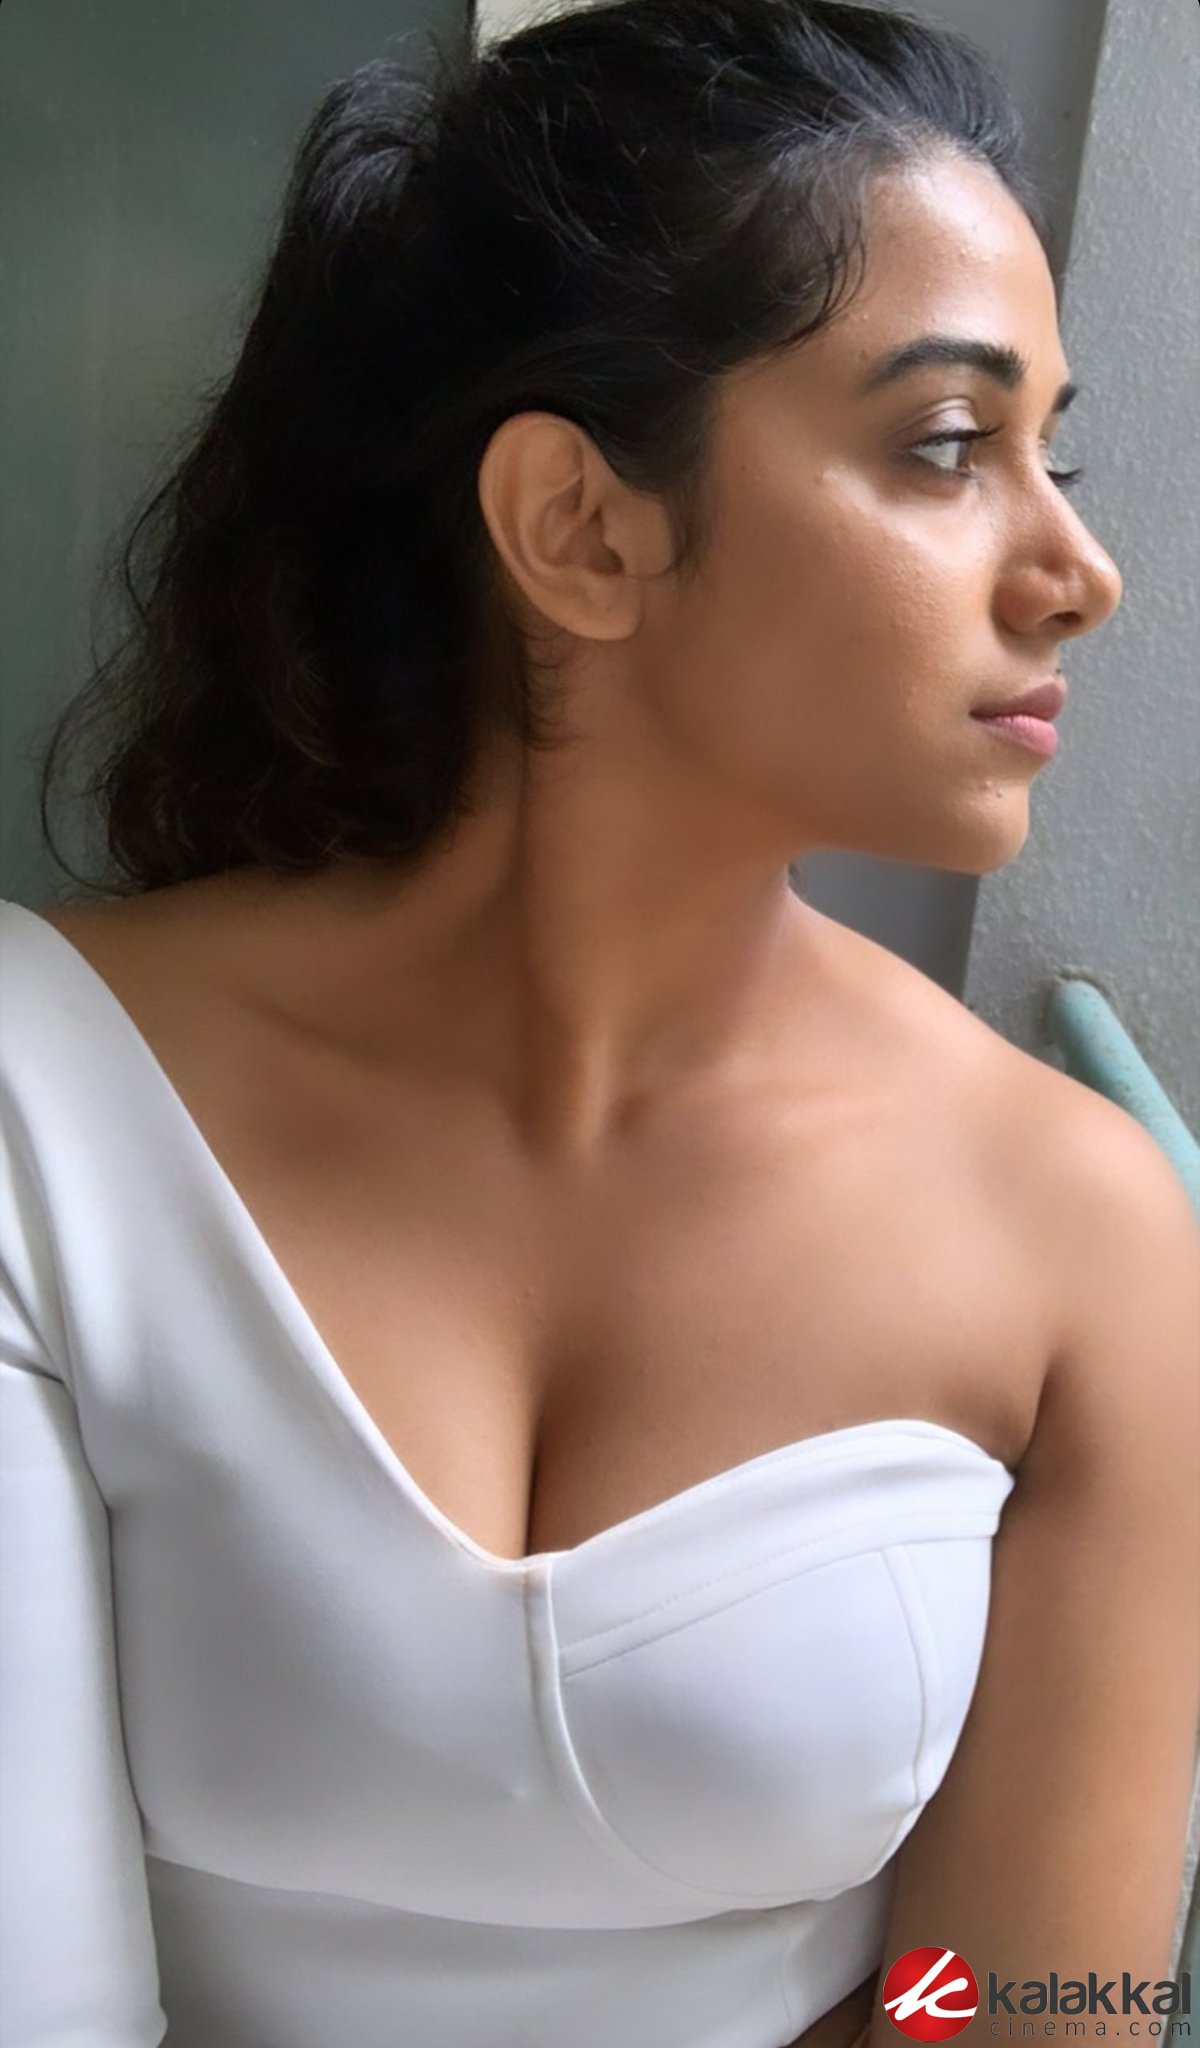 Actress Shilpa Manjunath Latest Photos